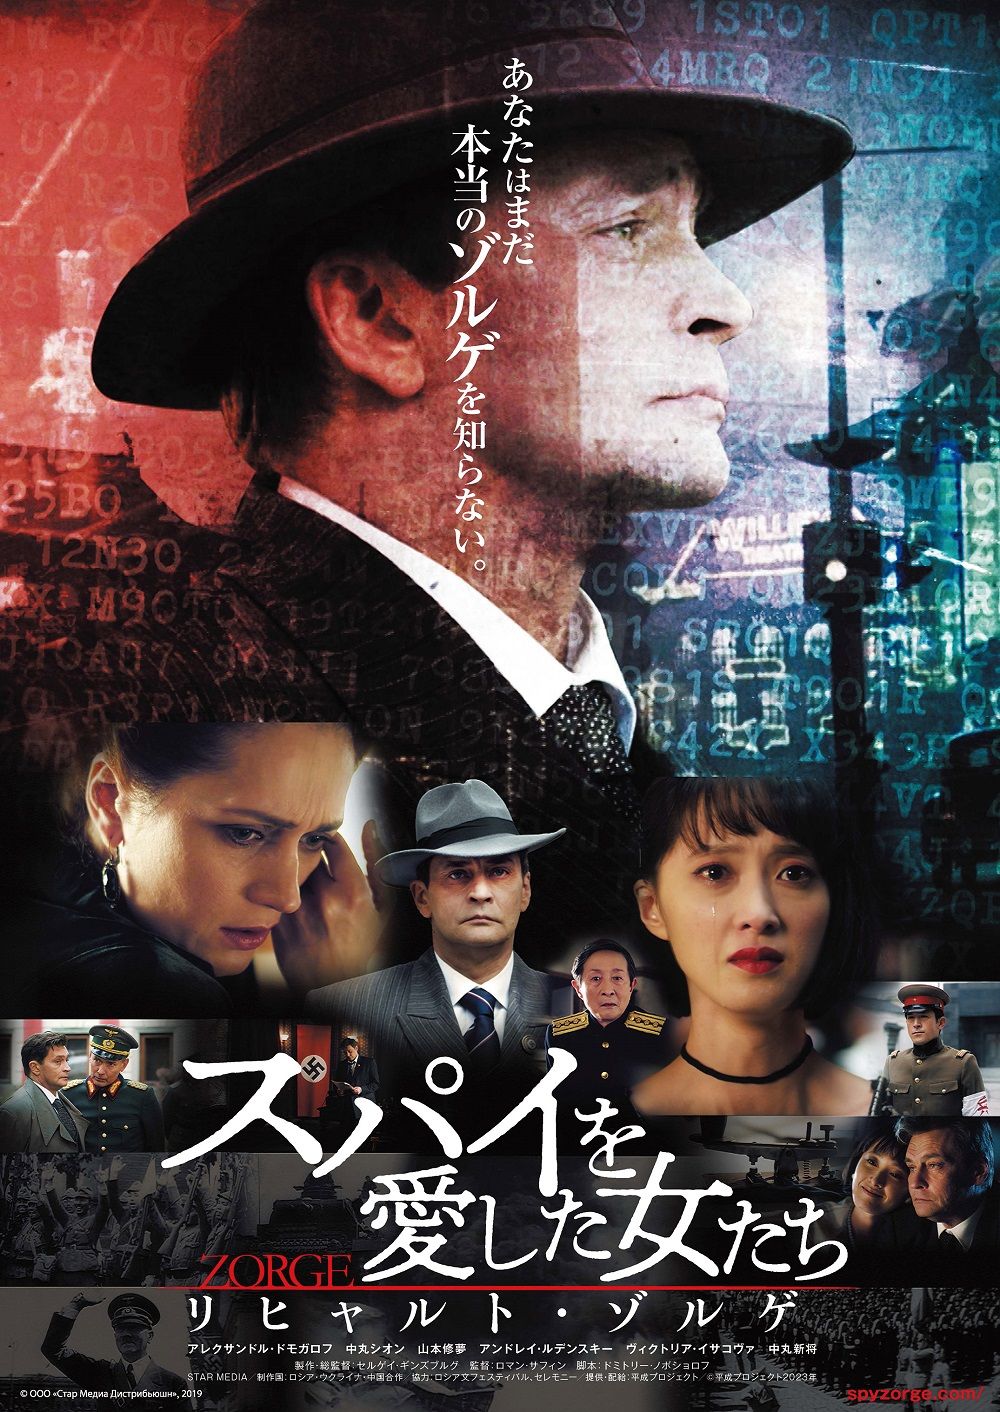 プーチン大統領が憧れ、「世紀のスパイ」ゾルゲの半生を描く映画が日本で初公開